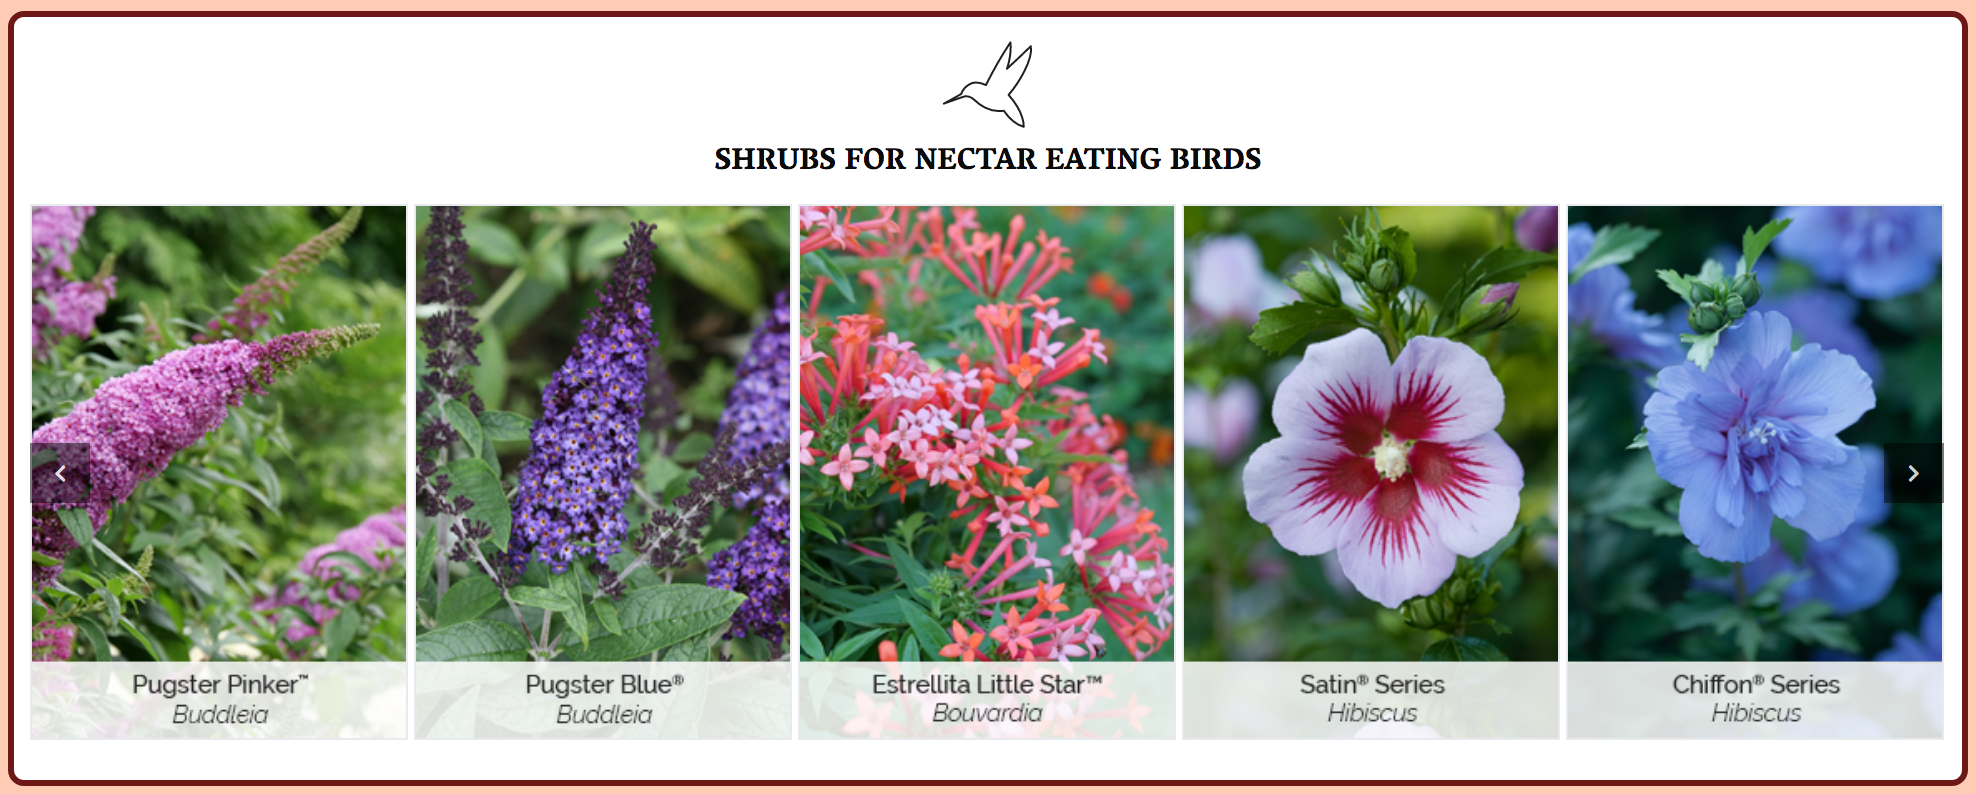 Proven Winner's suggestions for best shrubs for nectar eating birds.